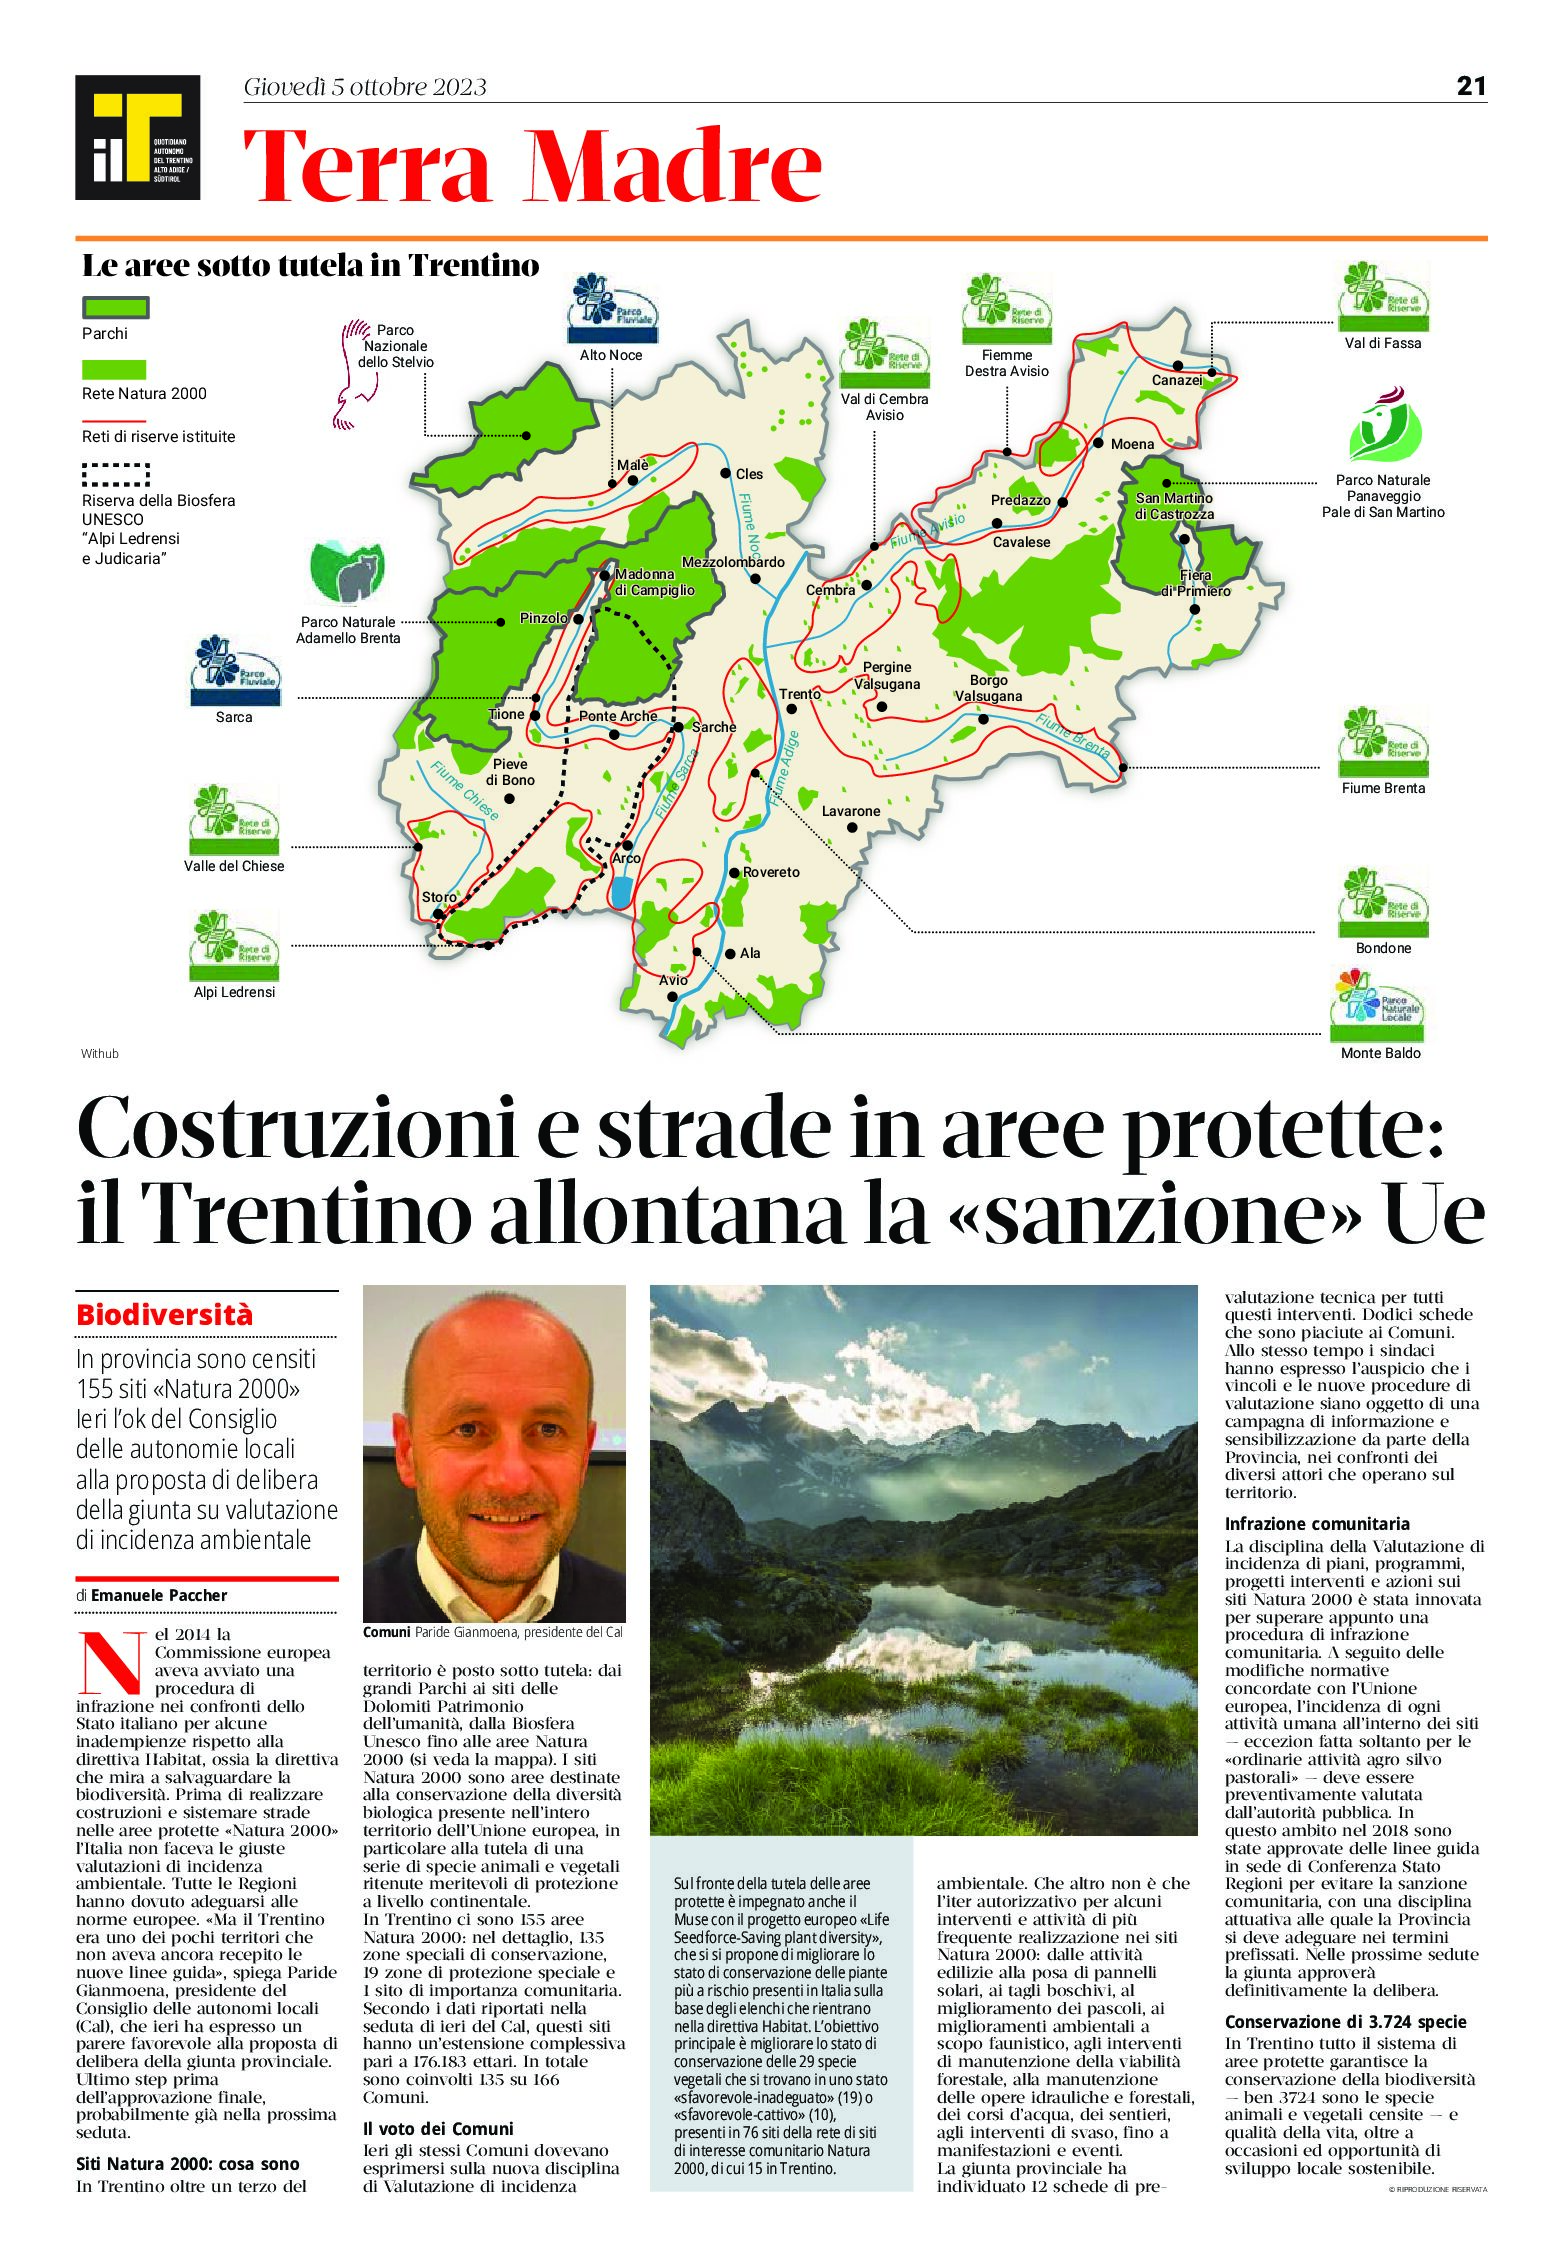 Costruzioni e strade in aree protette: il Trentino allontana la “sanzione” Ue